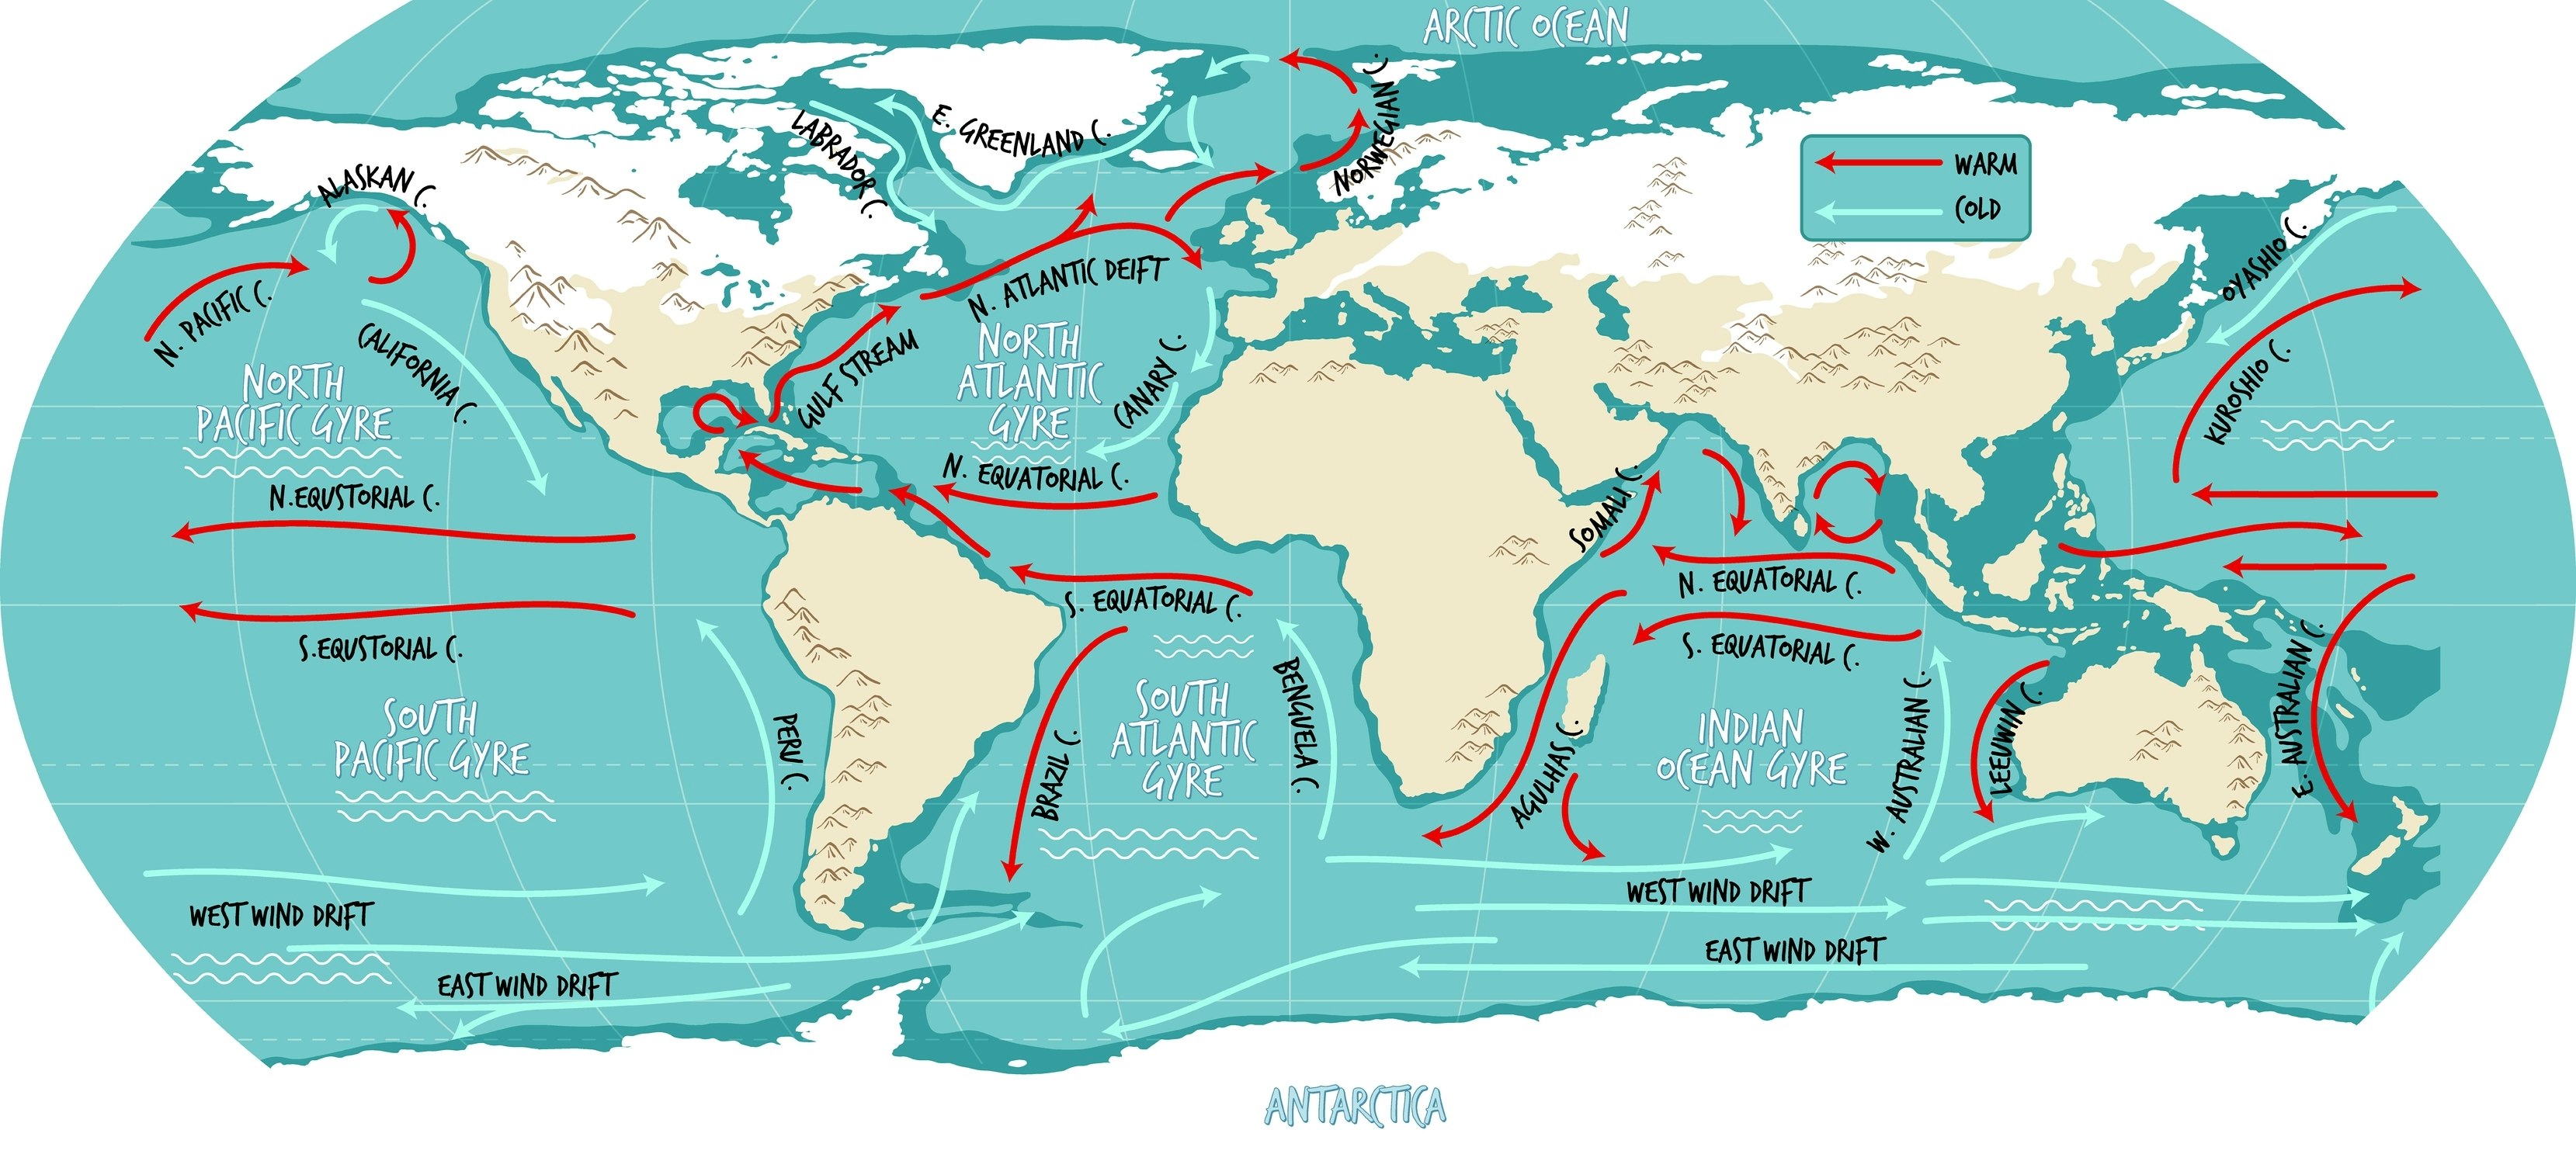 Ilustrační mapa světa oceánských proudů s názvy.